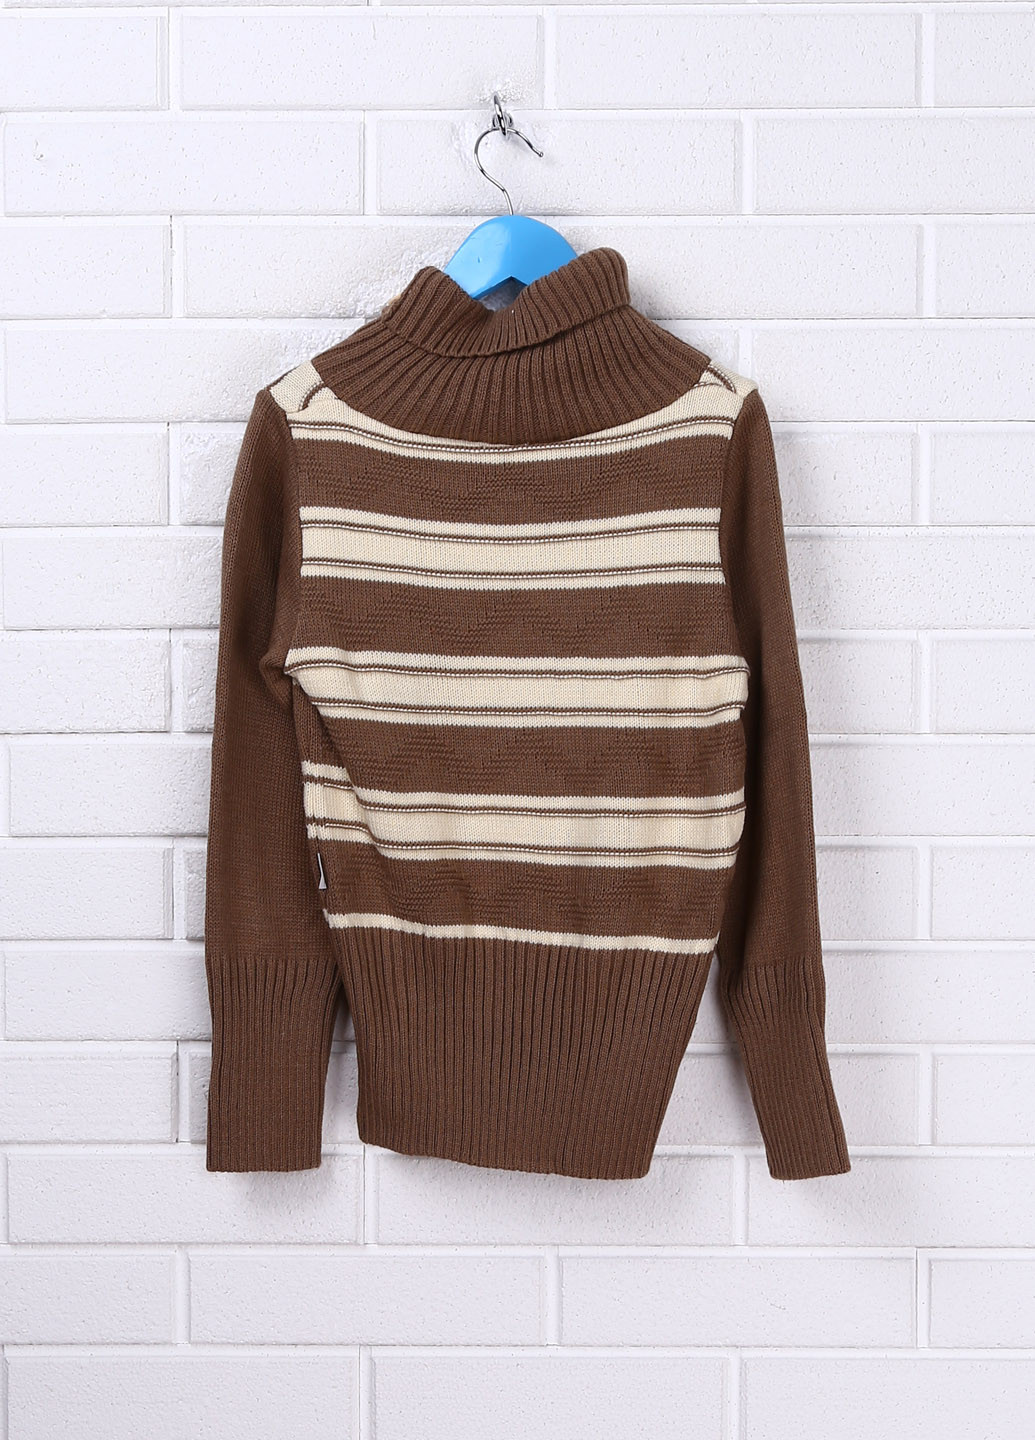 Коричневий демісезонний свитер пуловер Лютик